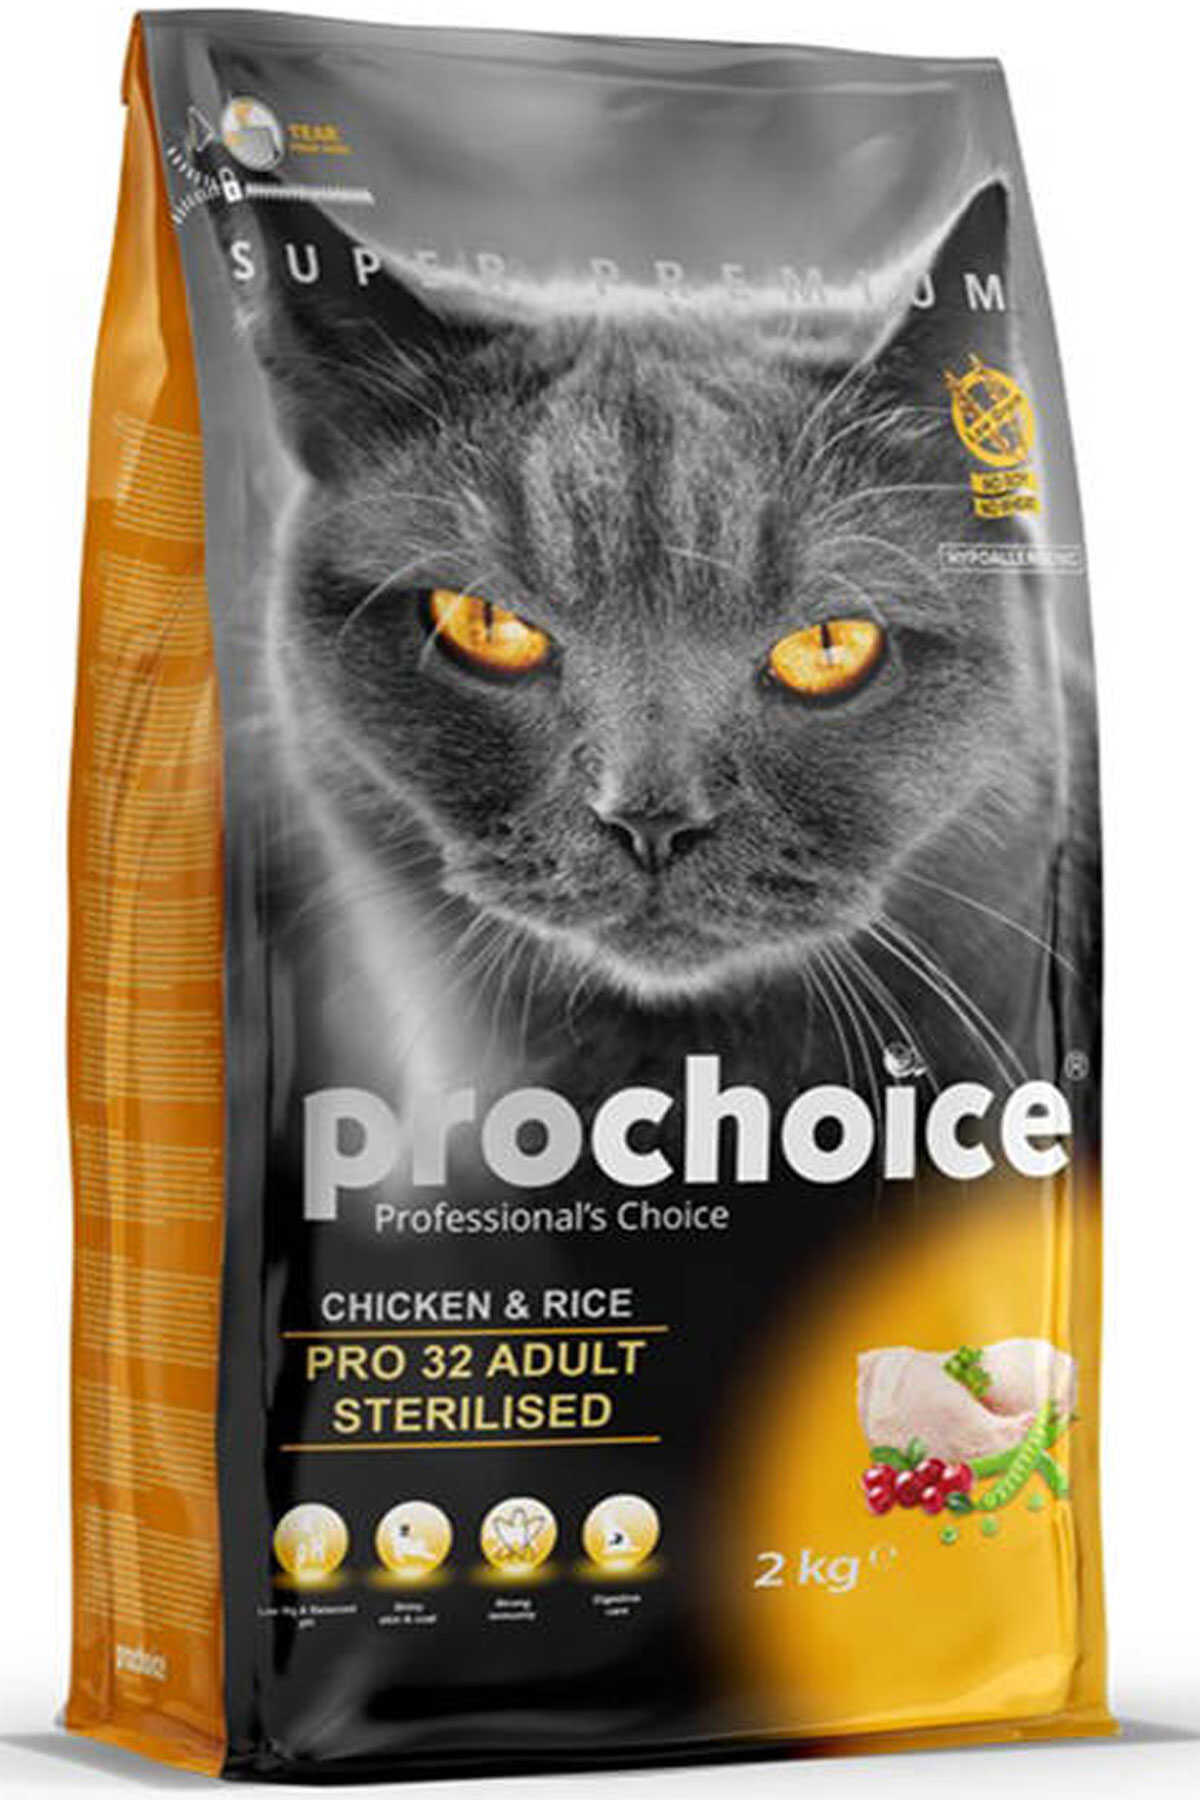 Pro Choice Pro 32 Tavuk ve Pirinçli Kısırlaştırılmış Yetişkin Kedi Maması 2kg